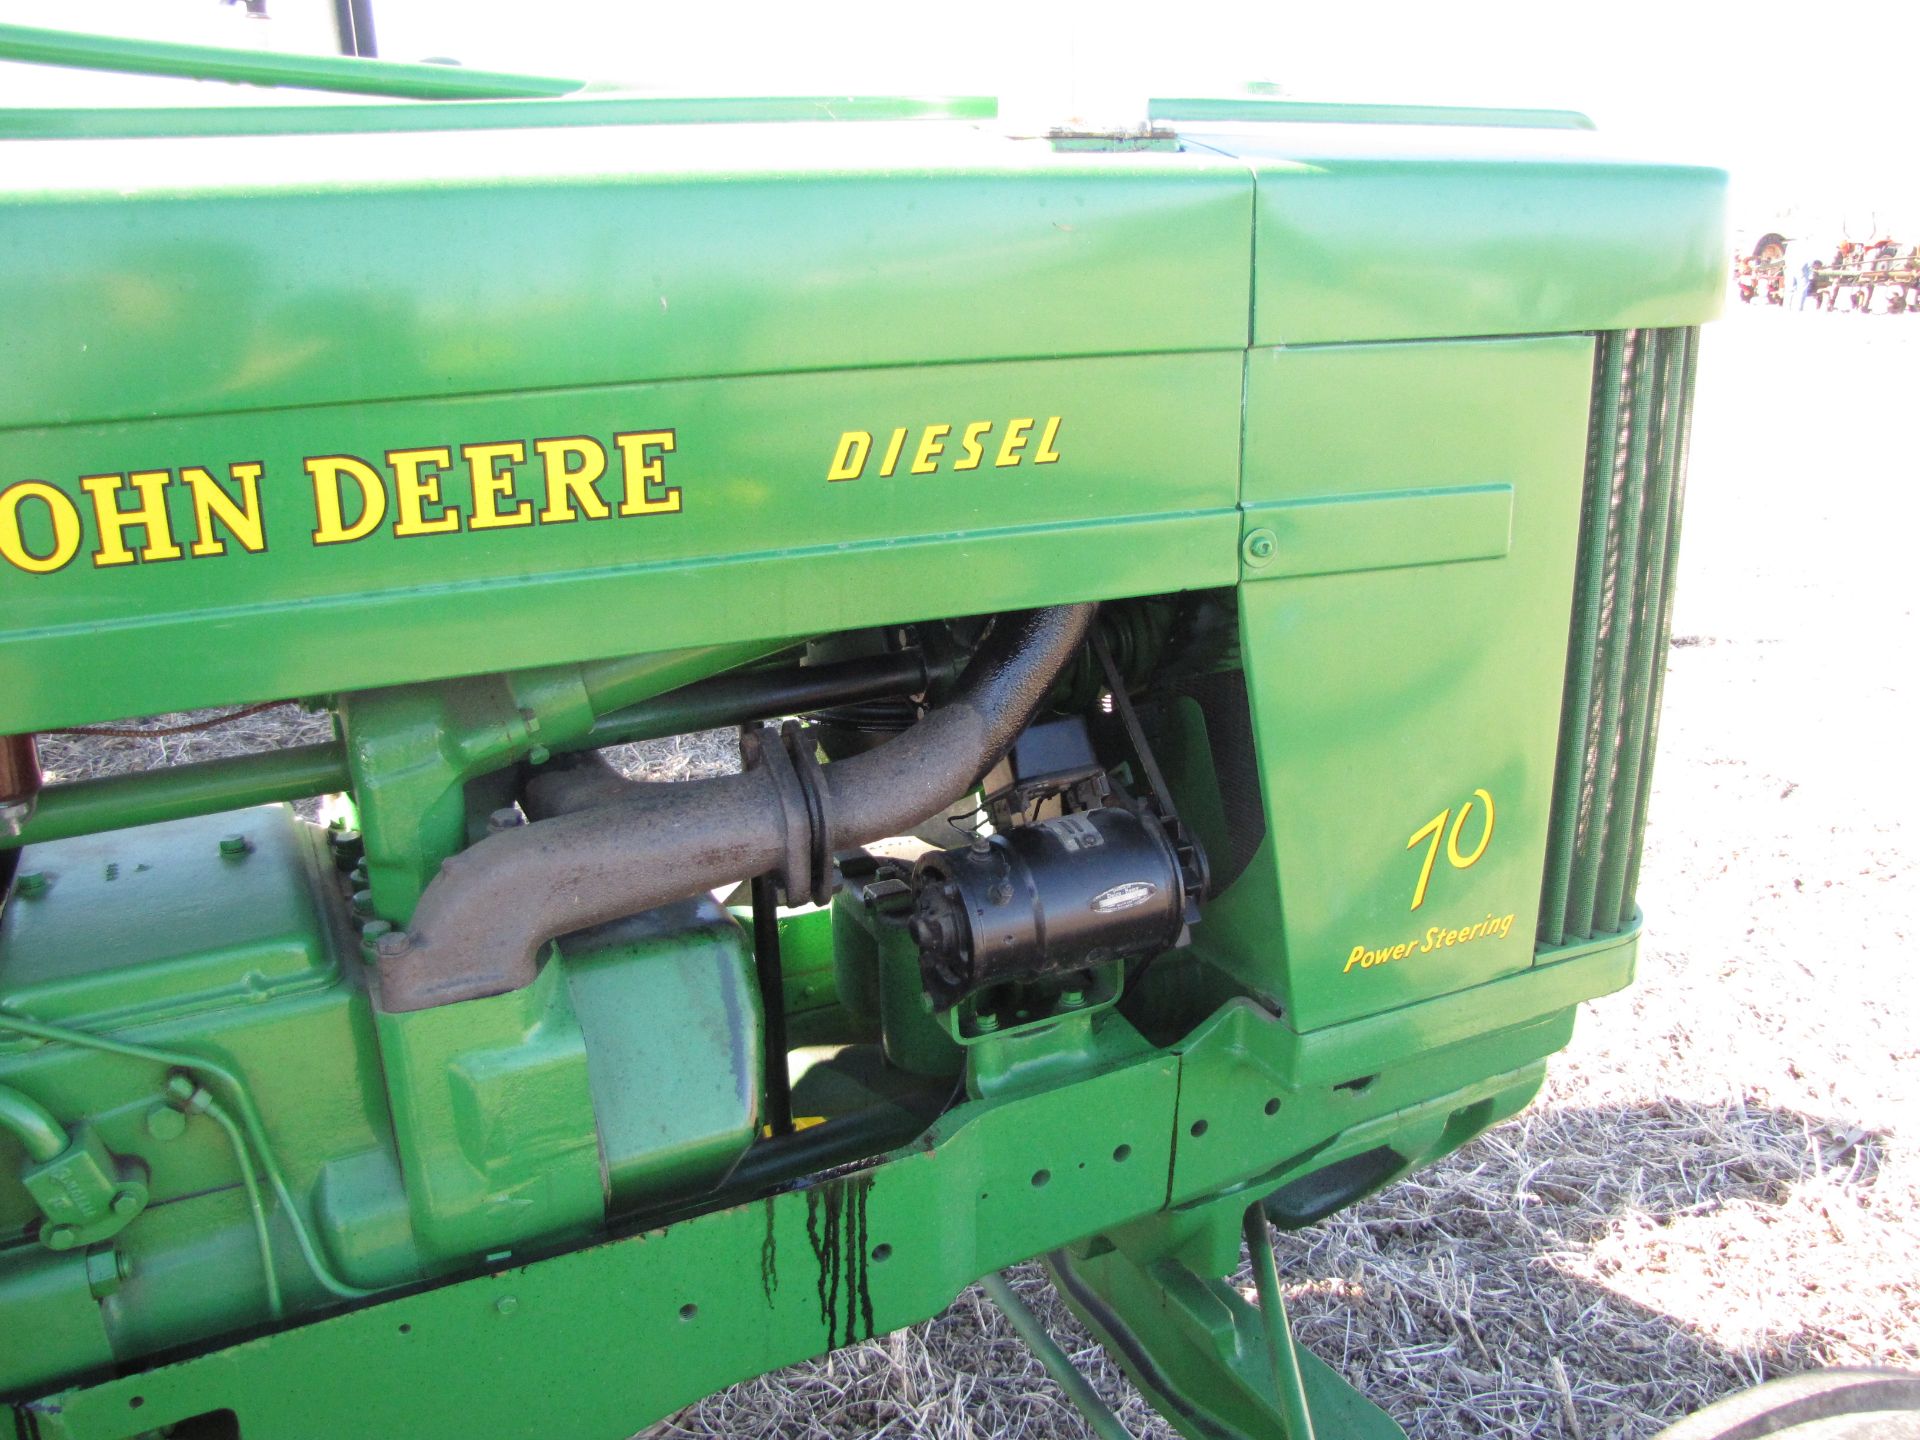 John Deere 70 Tractor - Image 38 of 47